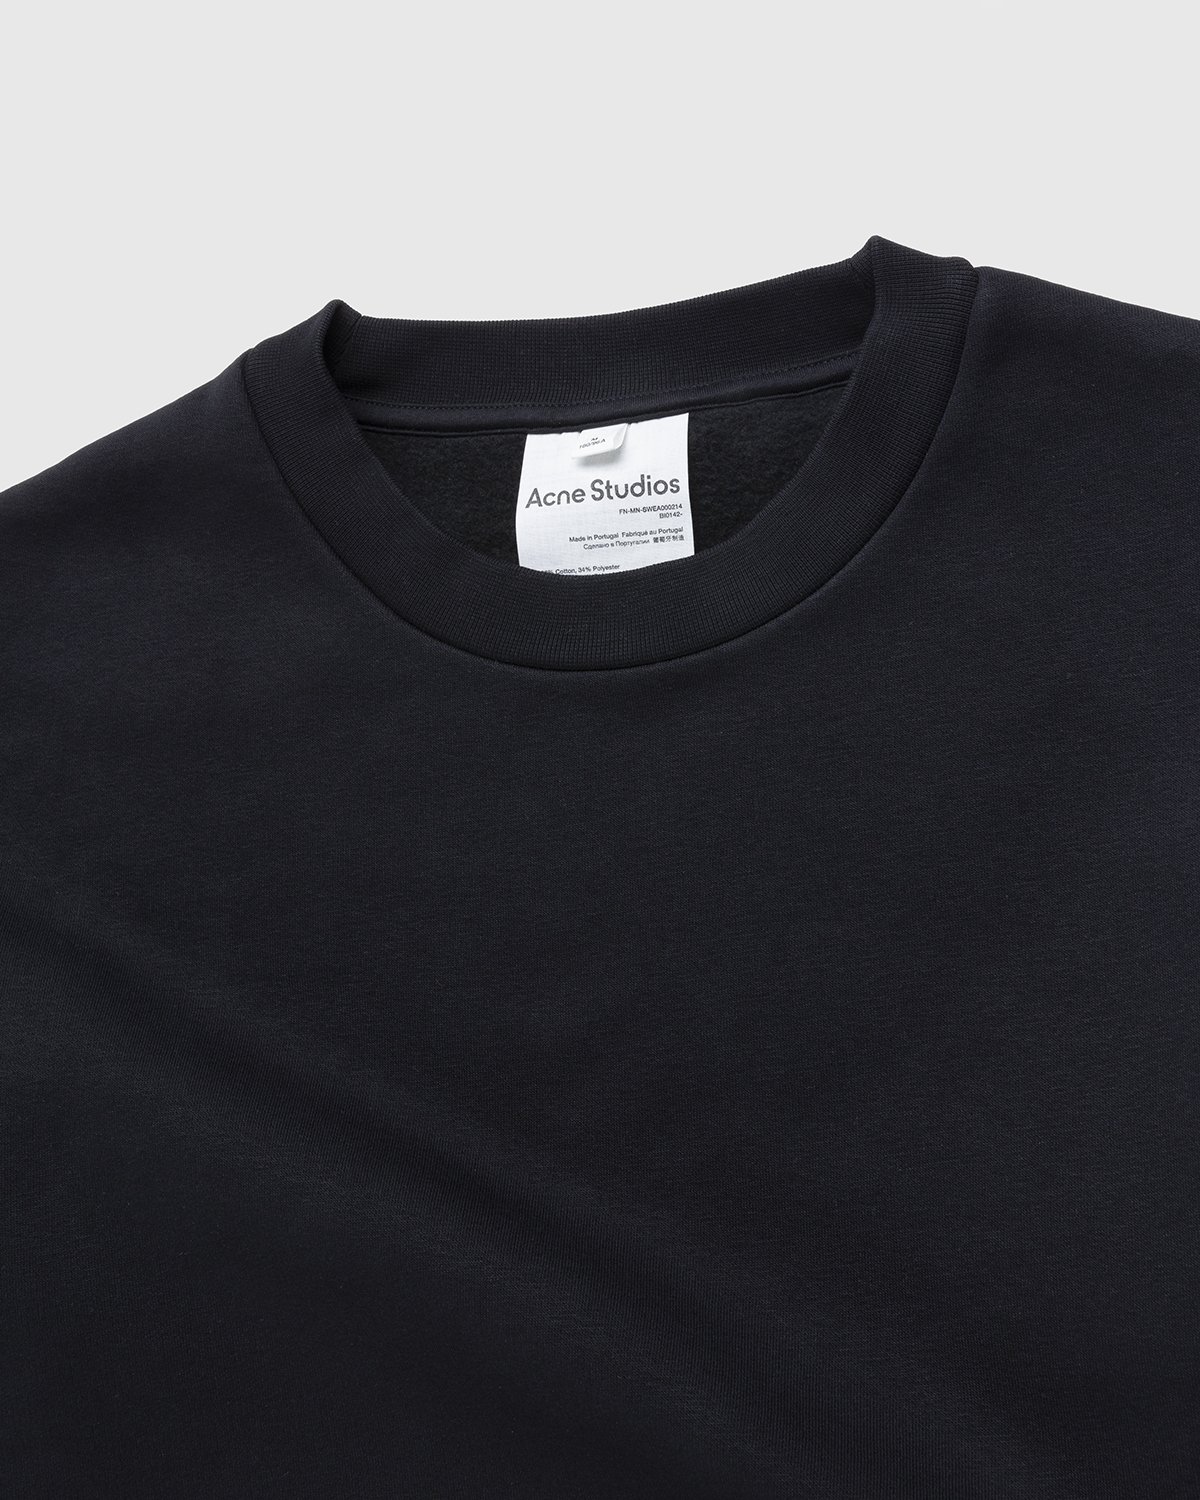 Acne Studios - Brushed Sweatshirt Black - Clothing - Black - Image 5